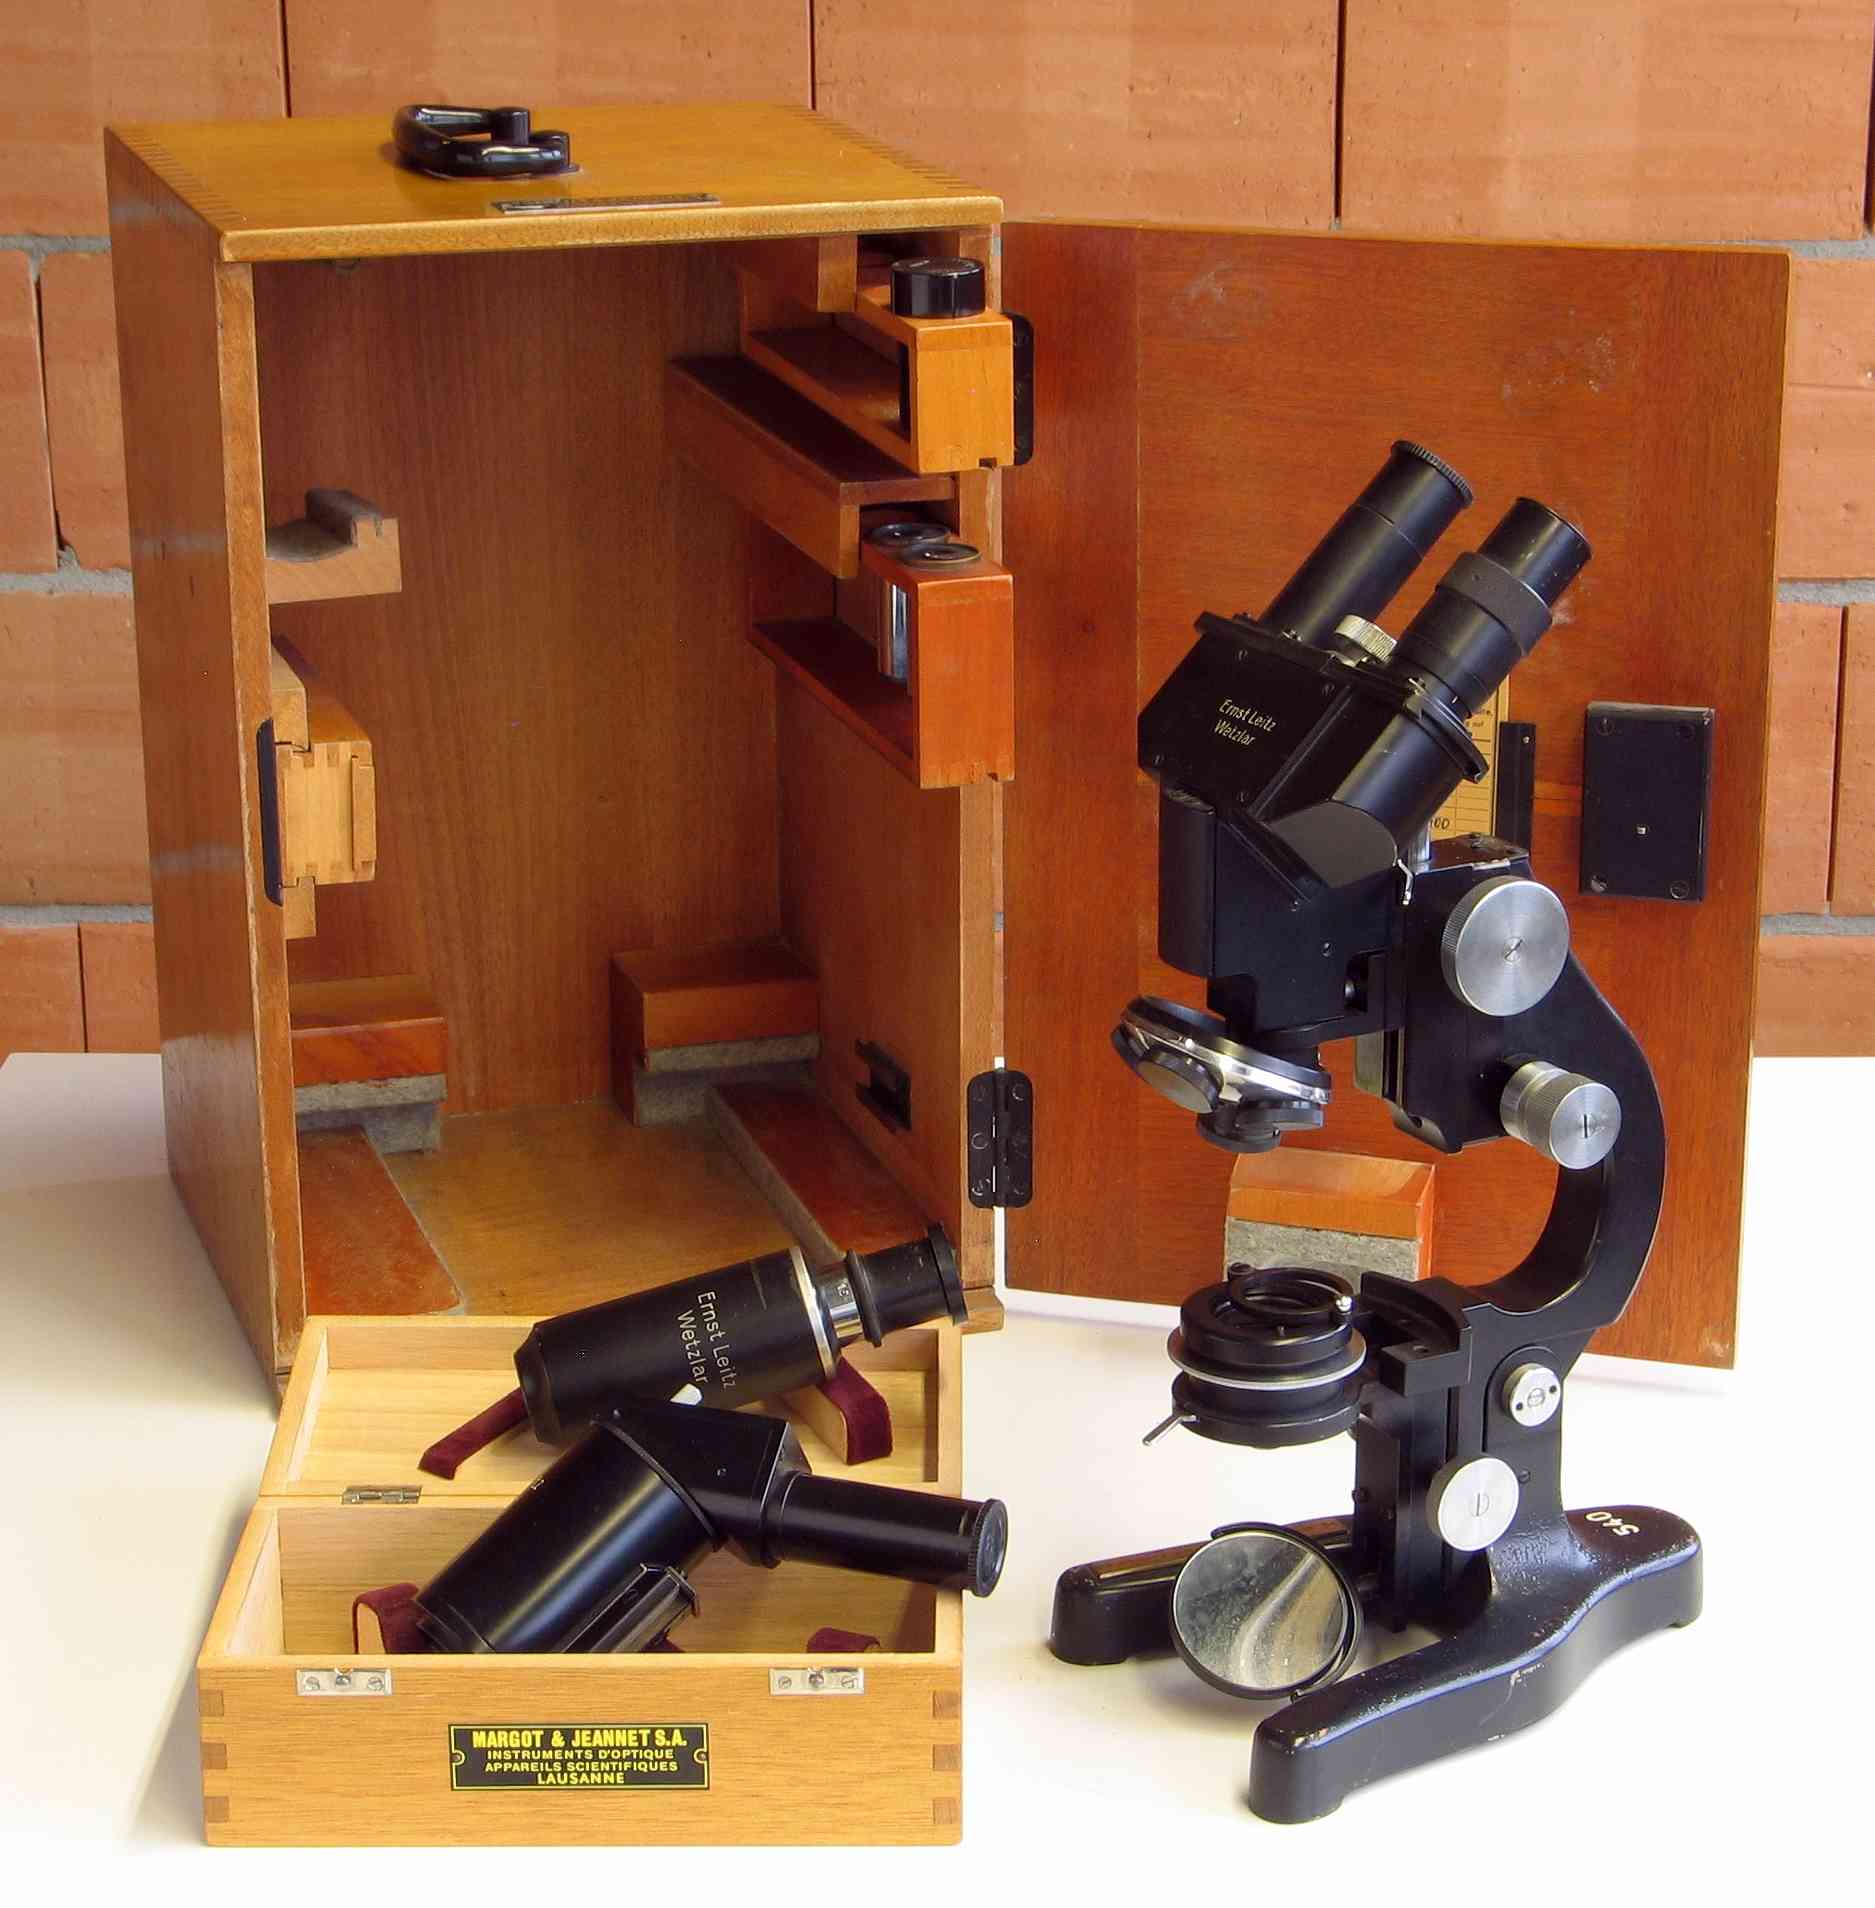 Microscope composé
(avec table à déplacement x–y micrométrique)